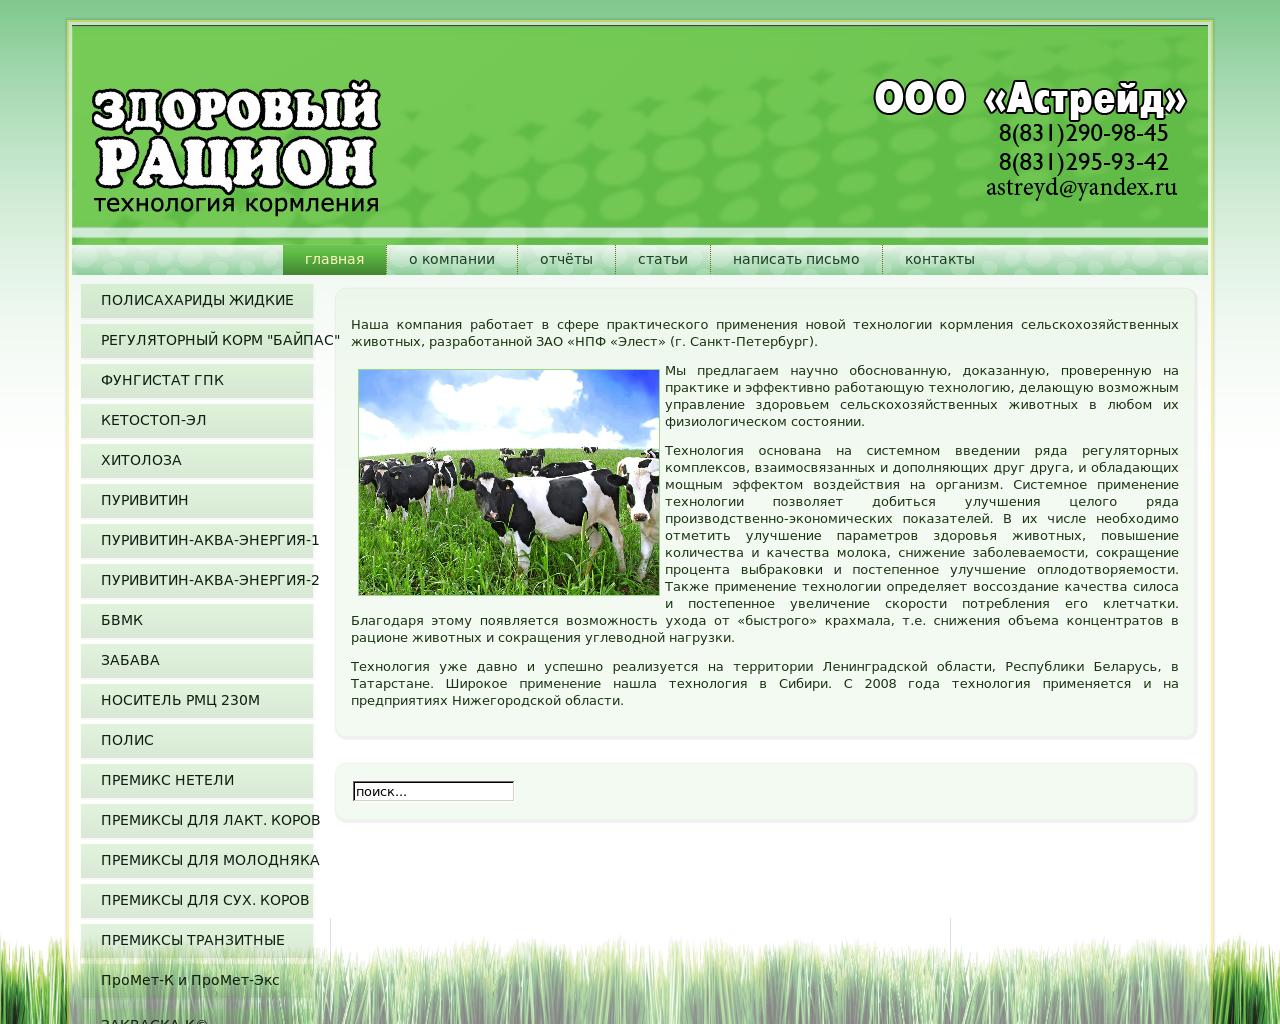 Изображение сайта сельхоздобавки.рф в разрешении 1280x1024